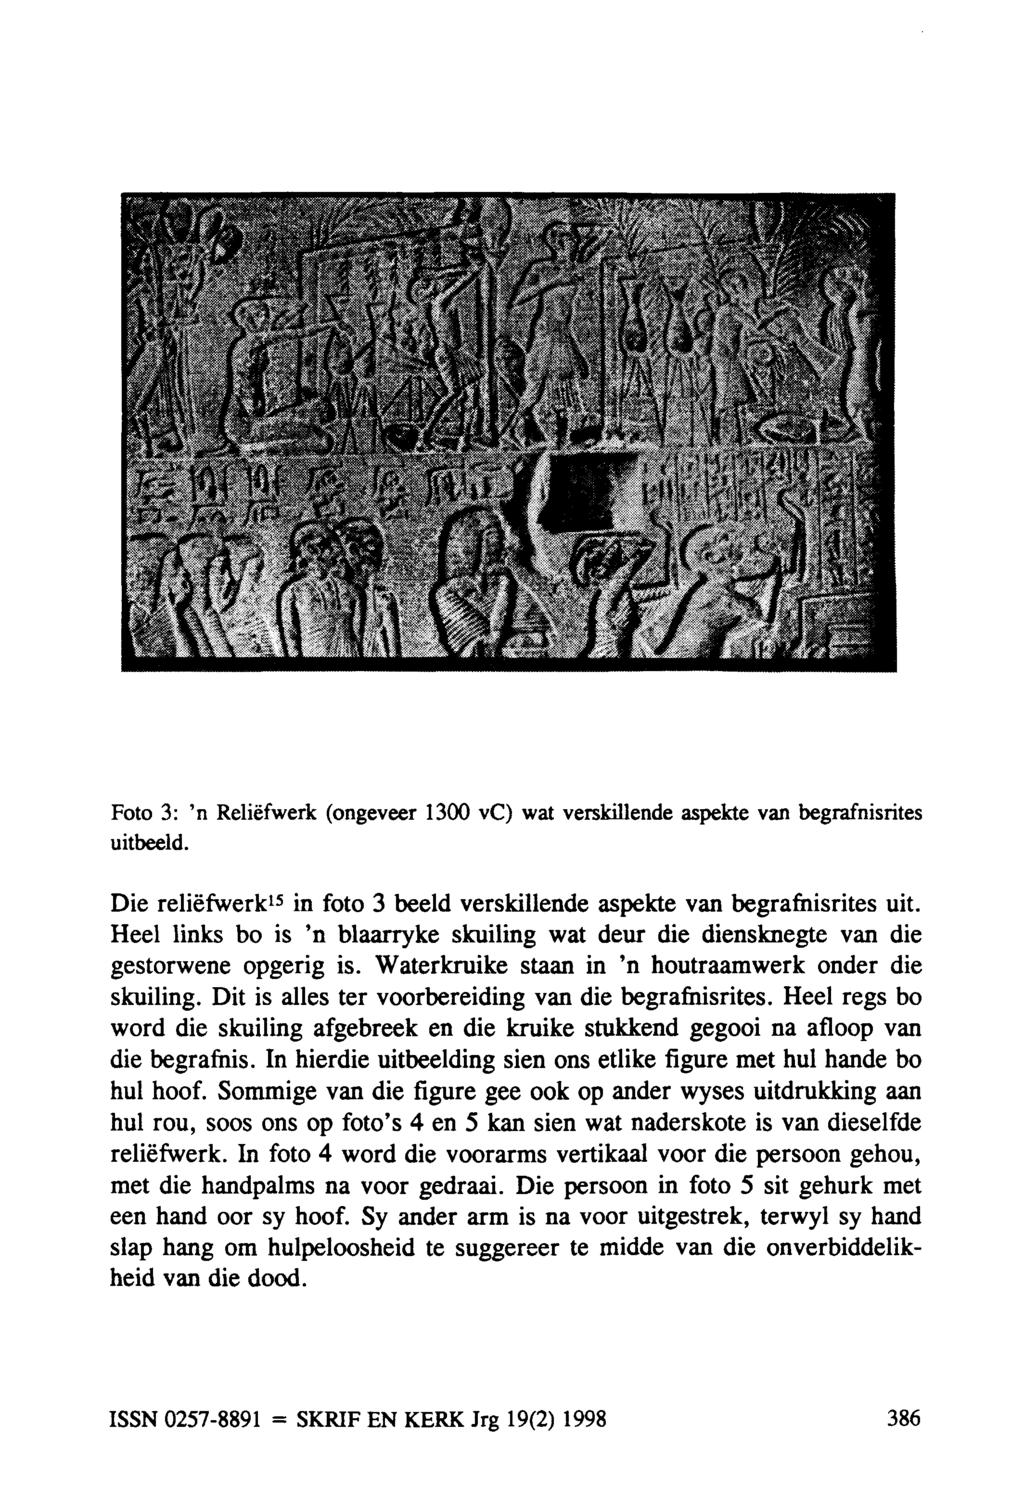 Foto 3: 'n Reliefwerk (ongeveer 1300 vc) wat verskillende aspekte van begrafnisrites uitbeeld. Die reliefwerk 15 in foto 3 beeld verskillende aspekte van begrafnisrites uit.